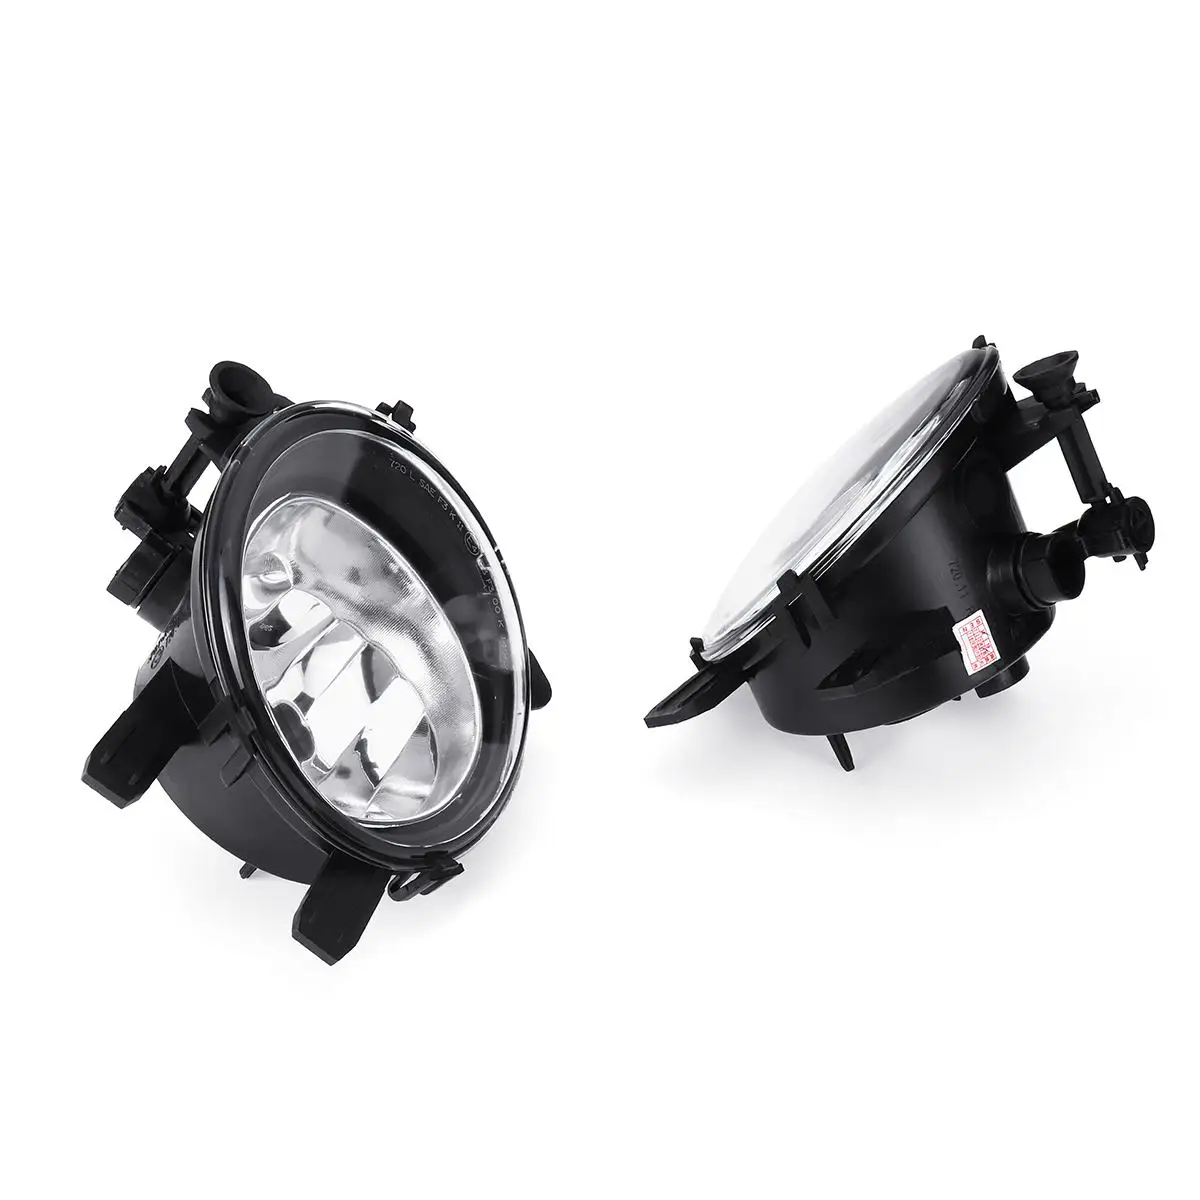 1 шт. передние противотуманные светильник абажур для лампы с металлическим каркаксом Emark без лампы для BMW 3 серии F22 F23 F30 F31 F32 F33 F34 F35 F36 2012 2013